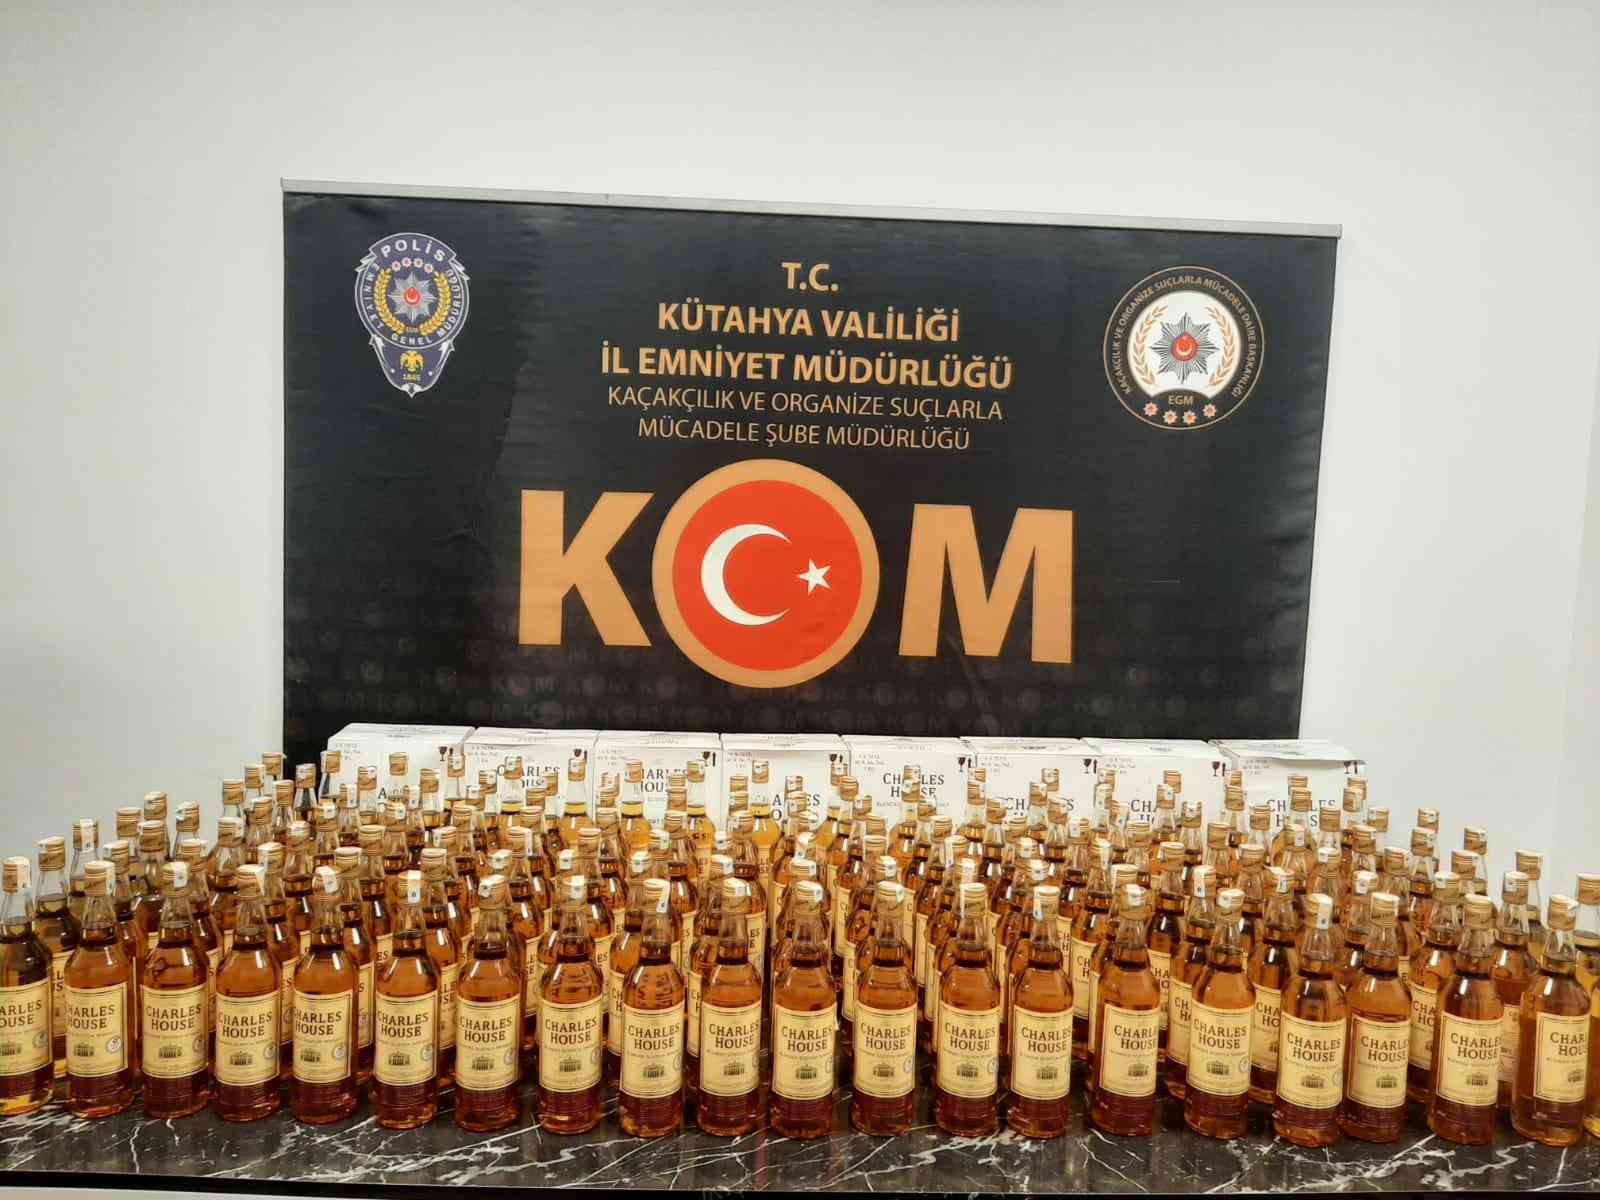 Kütahya’da 180 şişe kaçak içki ele geçirildi #kutahya